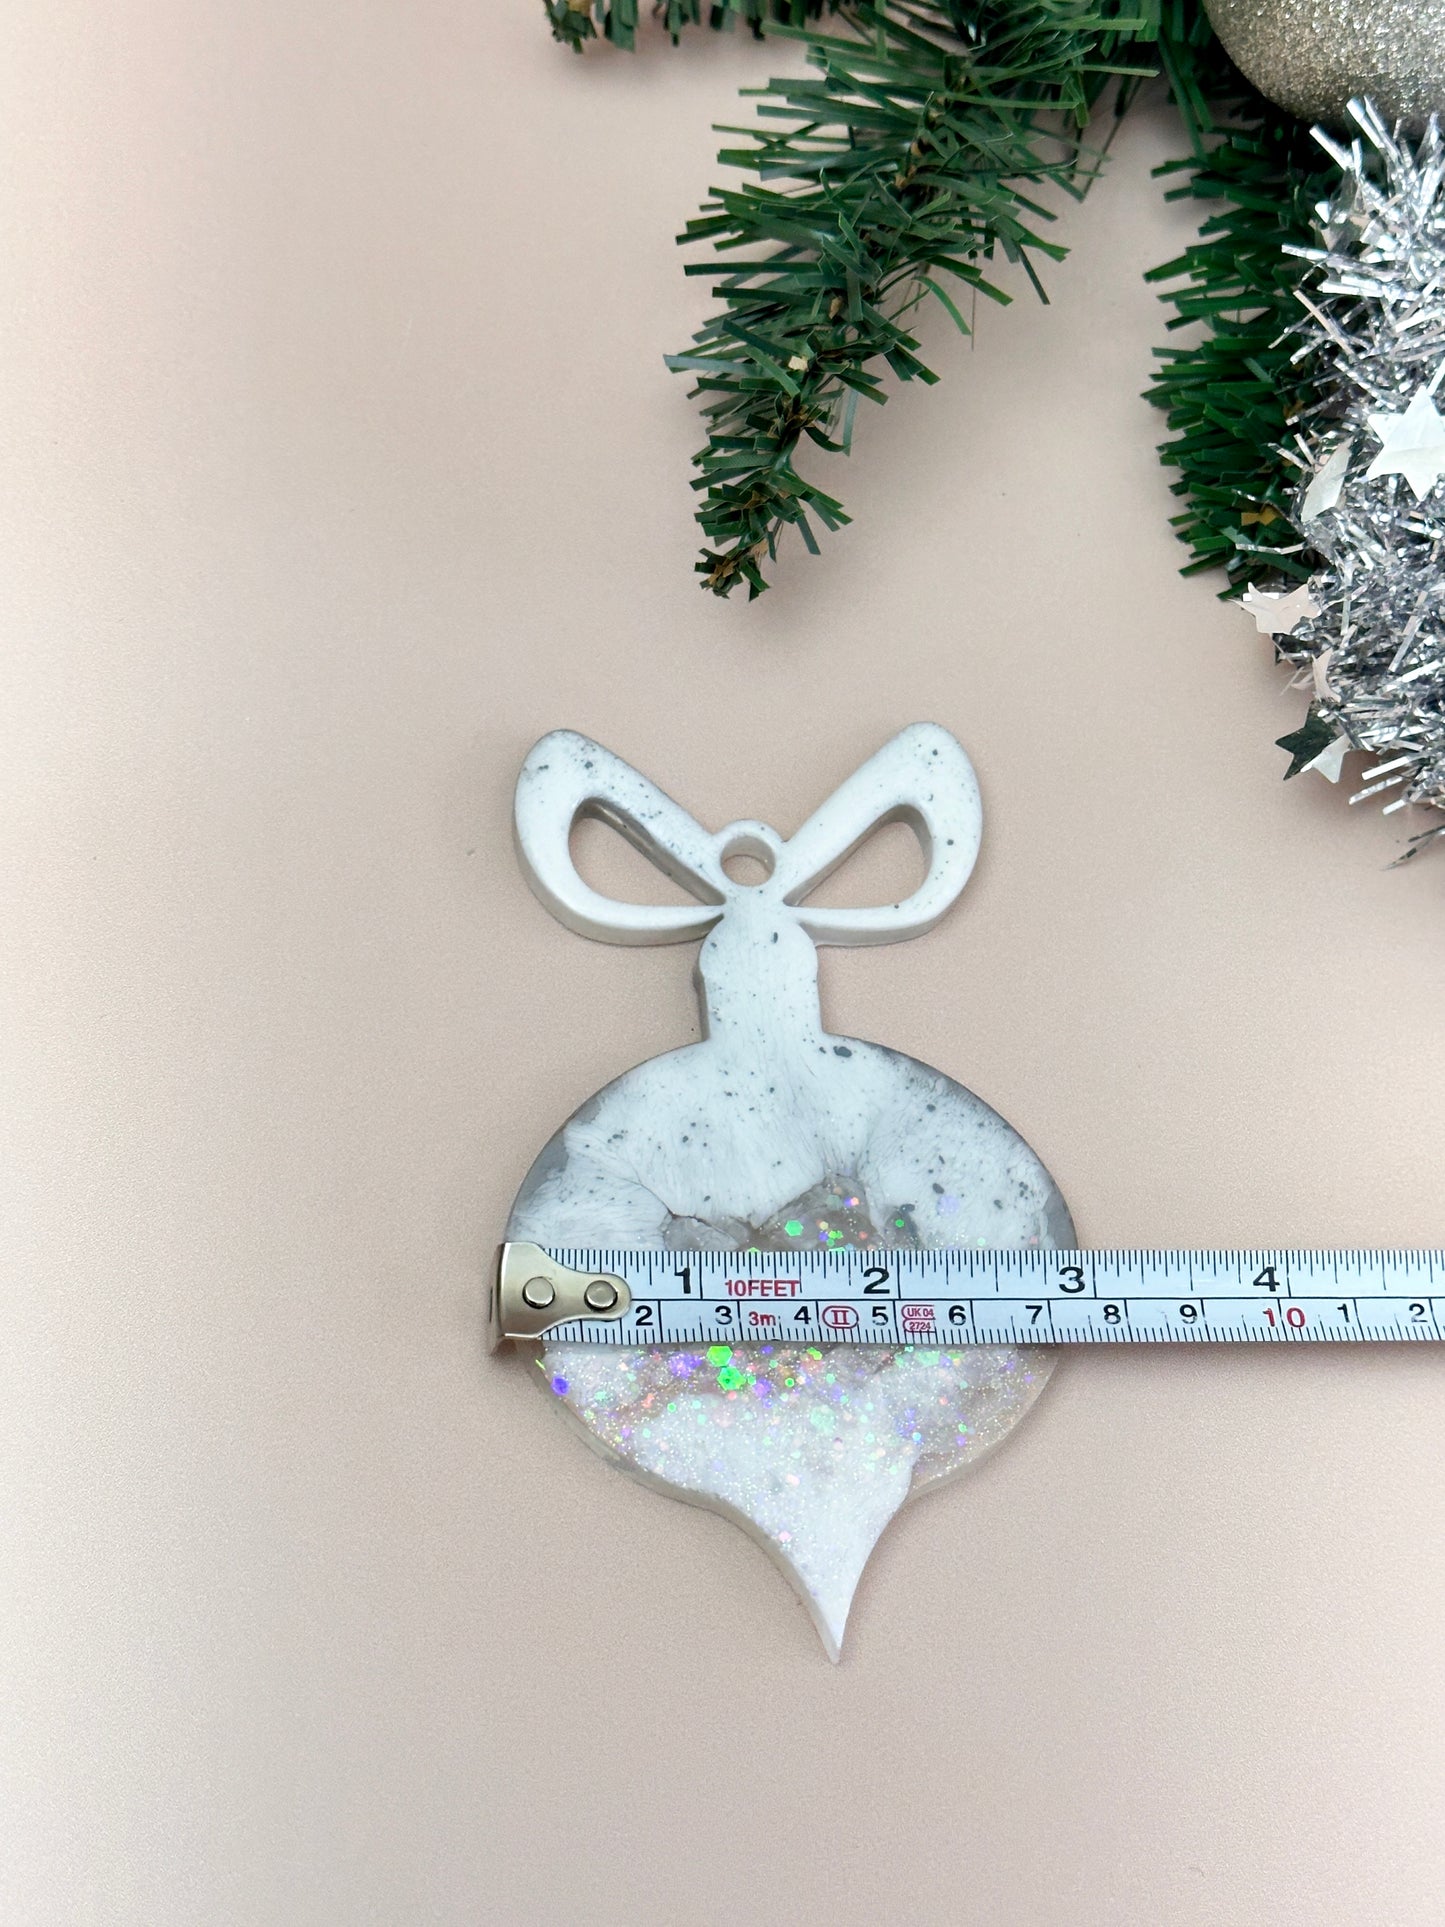 Силиконовая форма для елочных игрушек: создавайте праздничные поделки своими руками и рождественский домашний декор с помощью этой большой полимерной формы